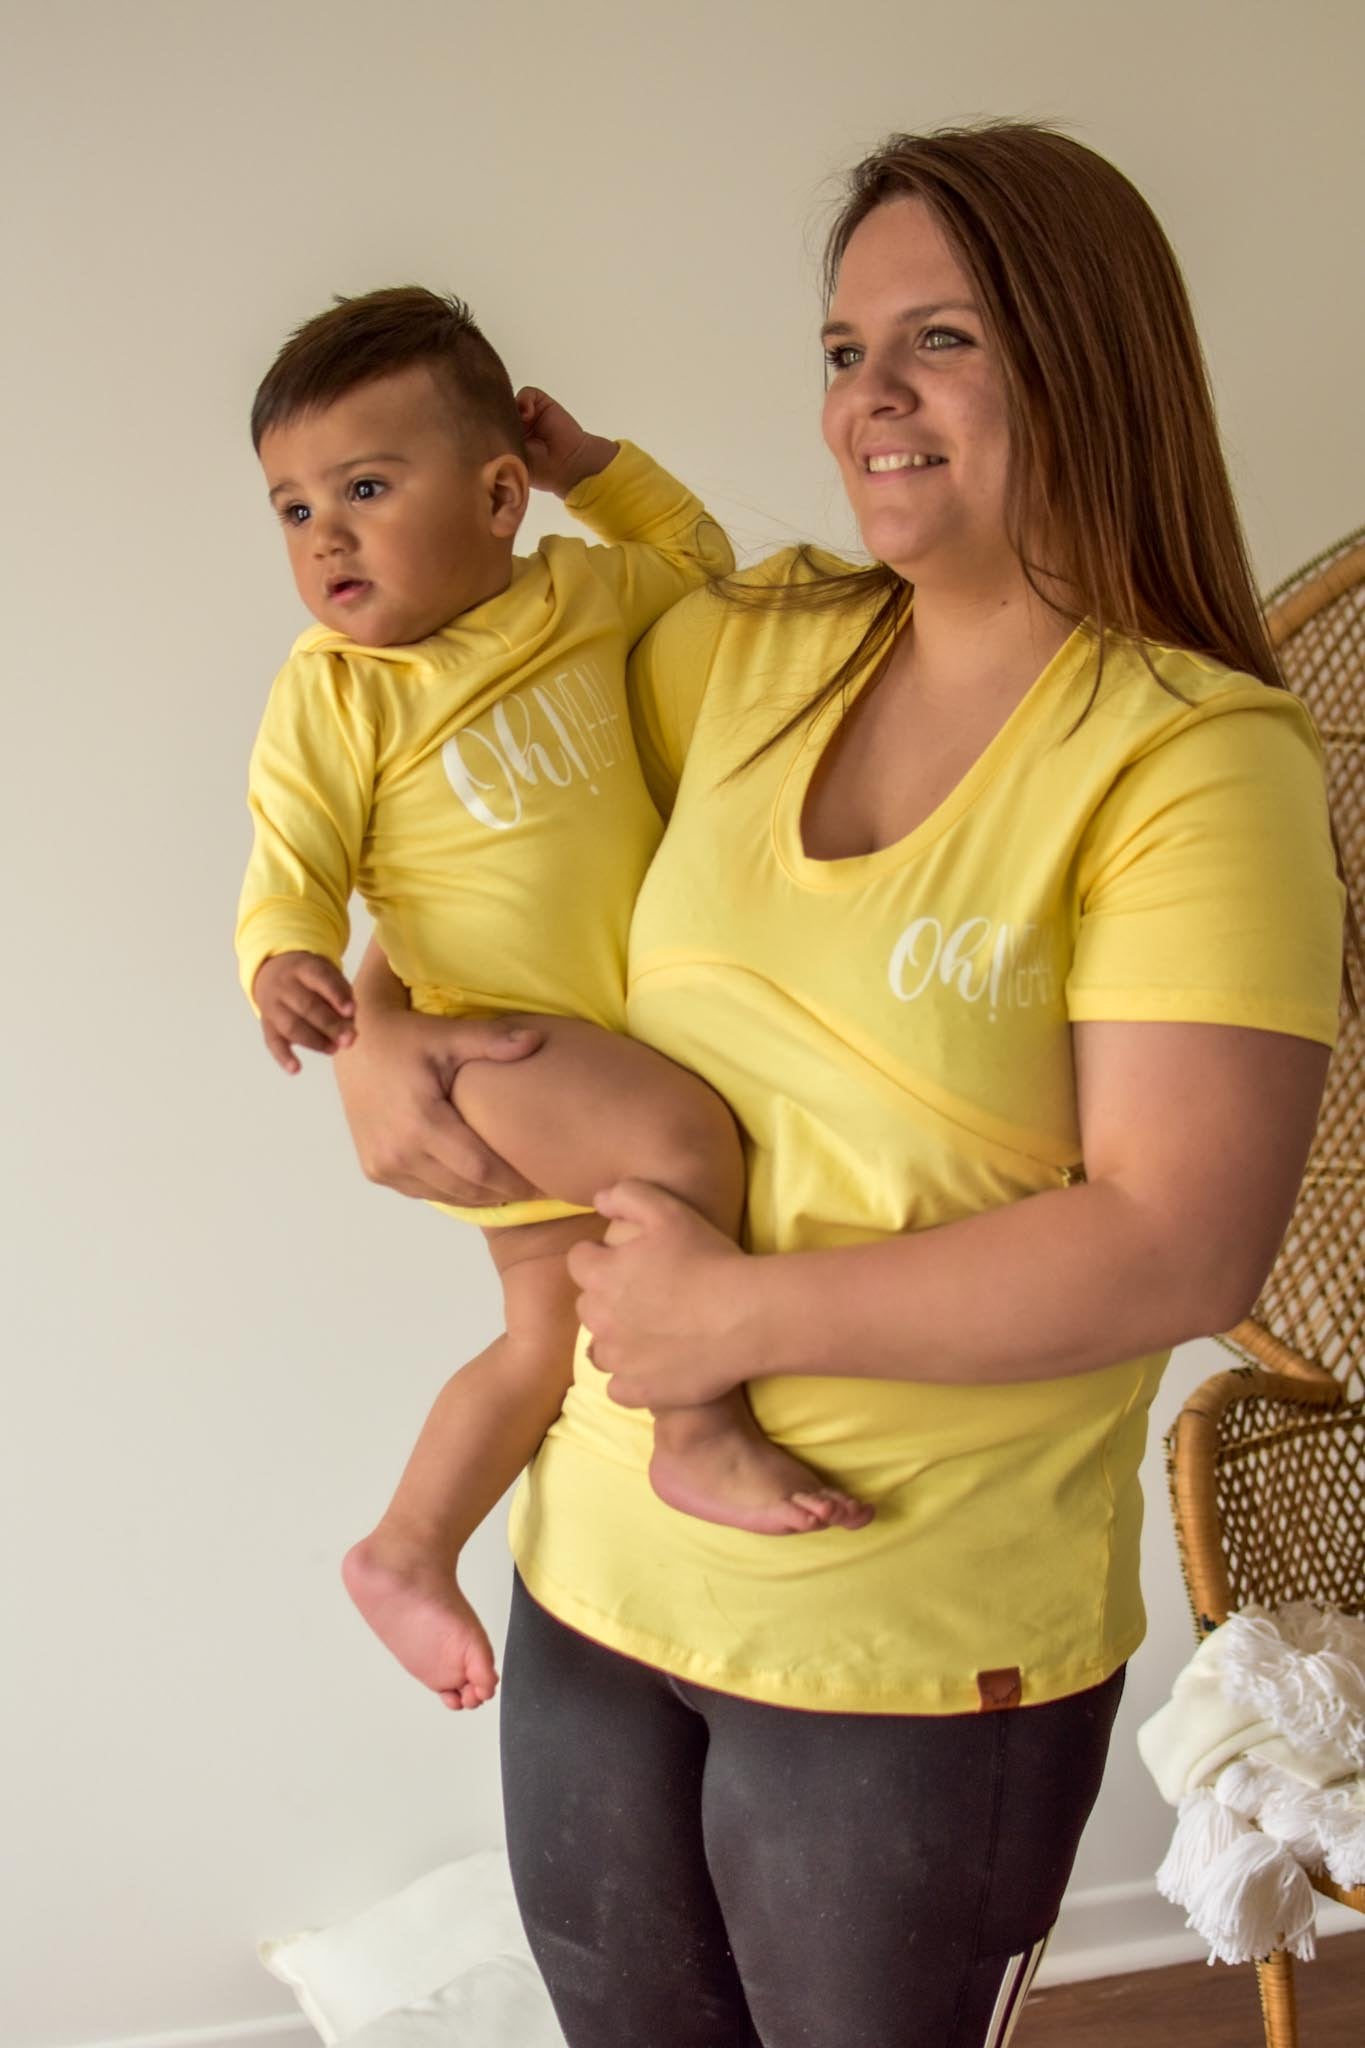 XSMALL - JAUNE t-shirt 3 en 1 maternité, allaitement, postpartum - Démo ( réf #313 )